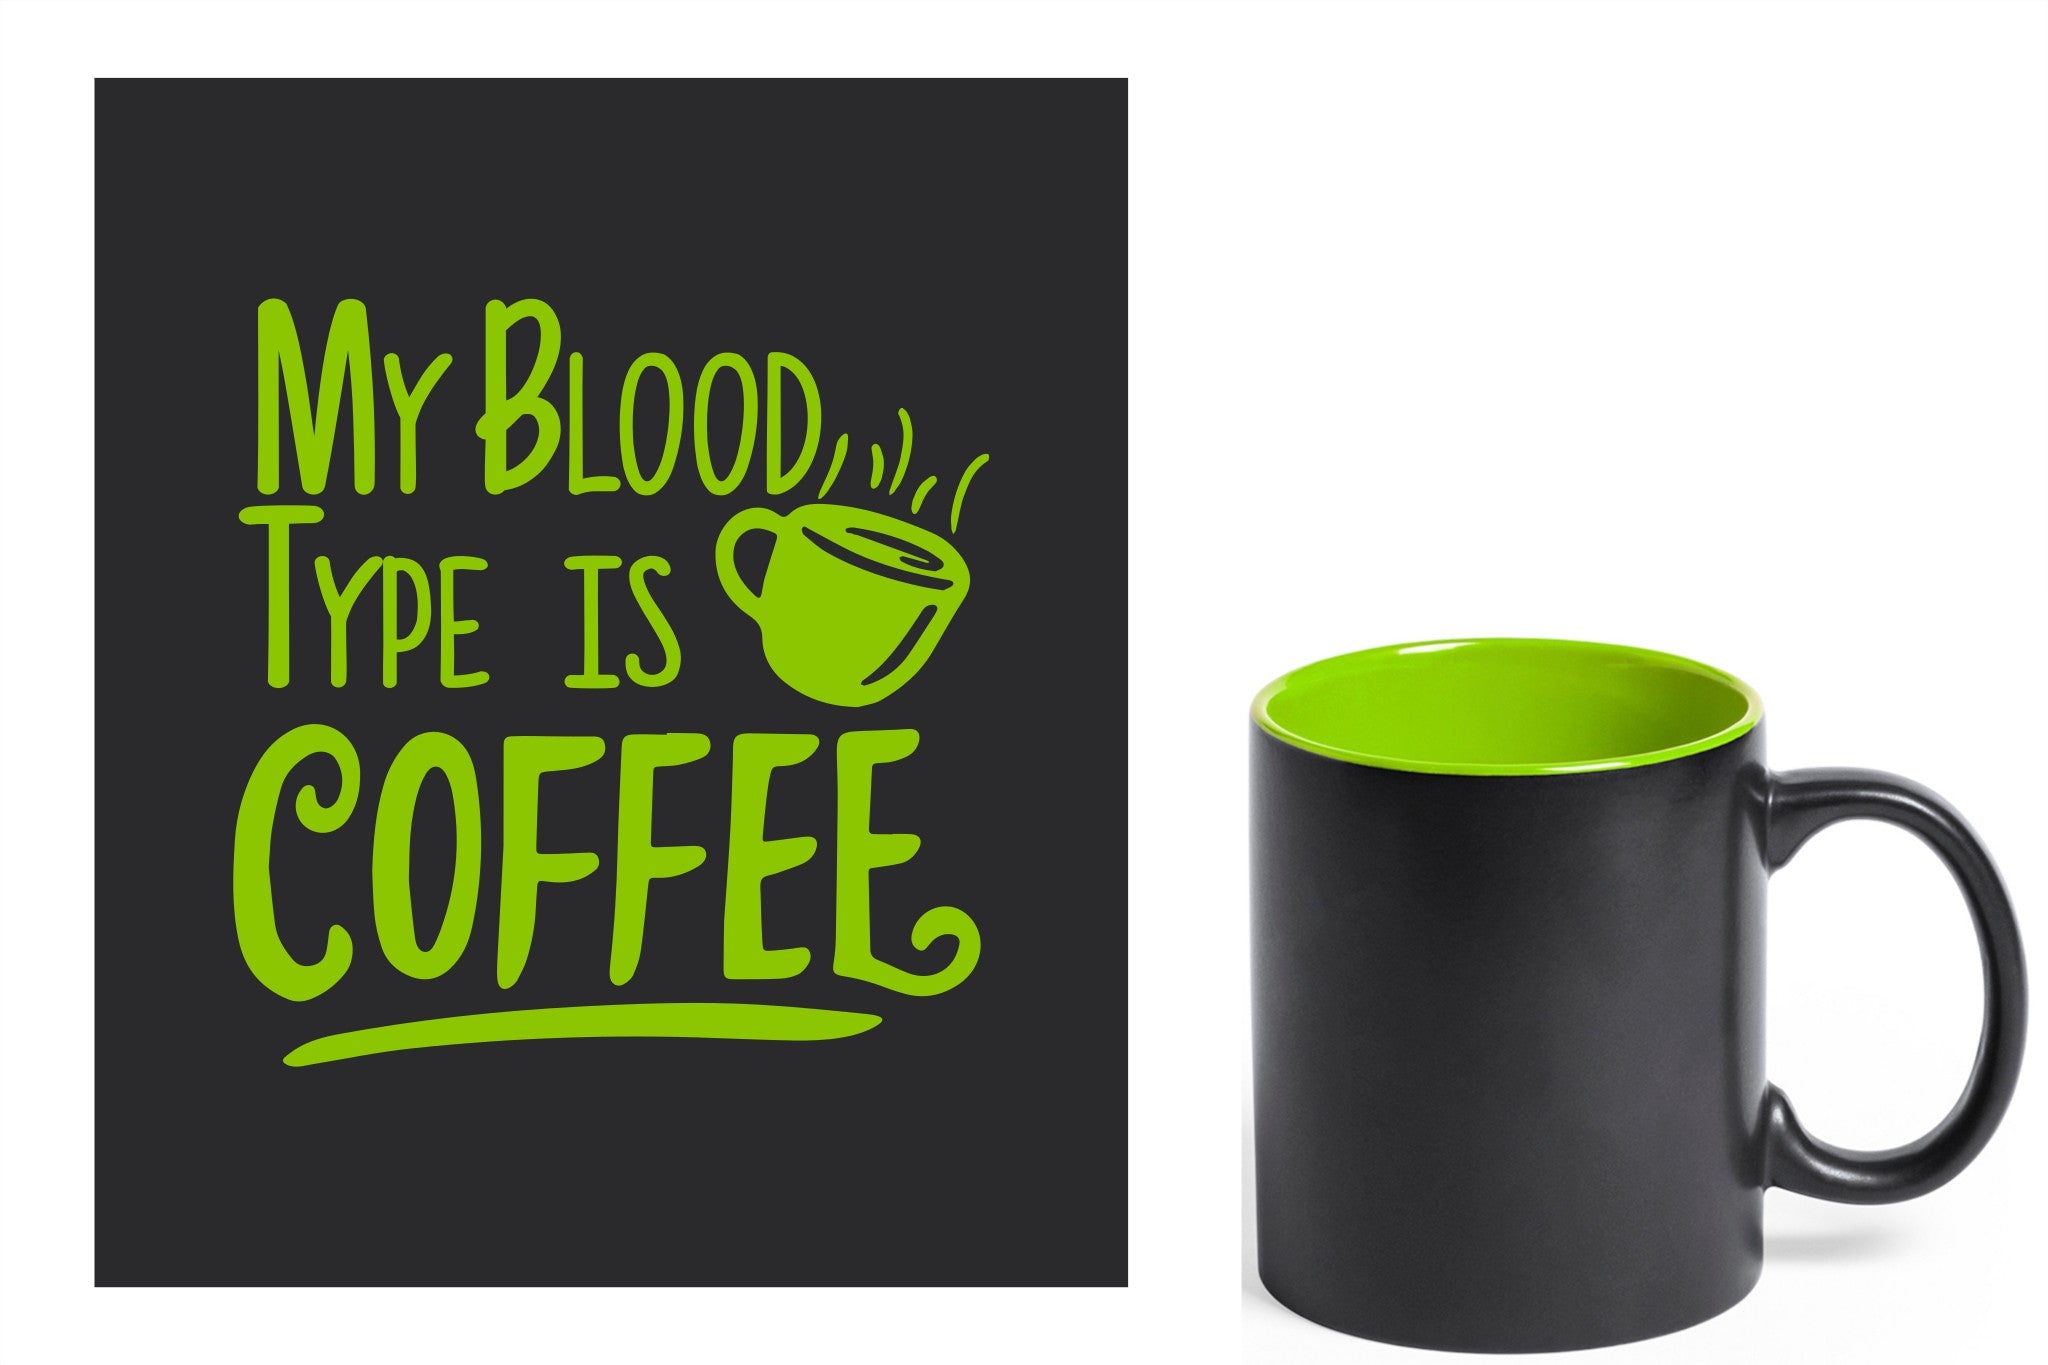 zwarte keramische mok met groene gravure  'My blood type is coffee'.